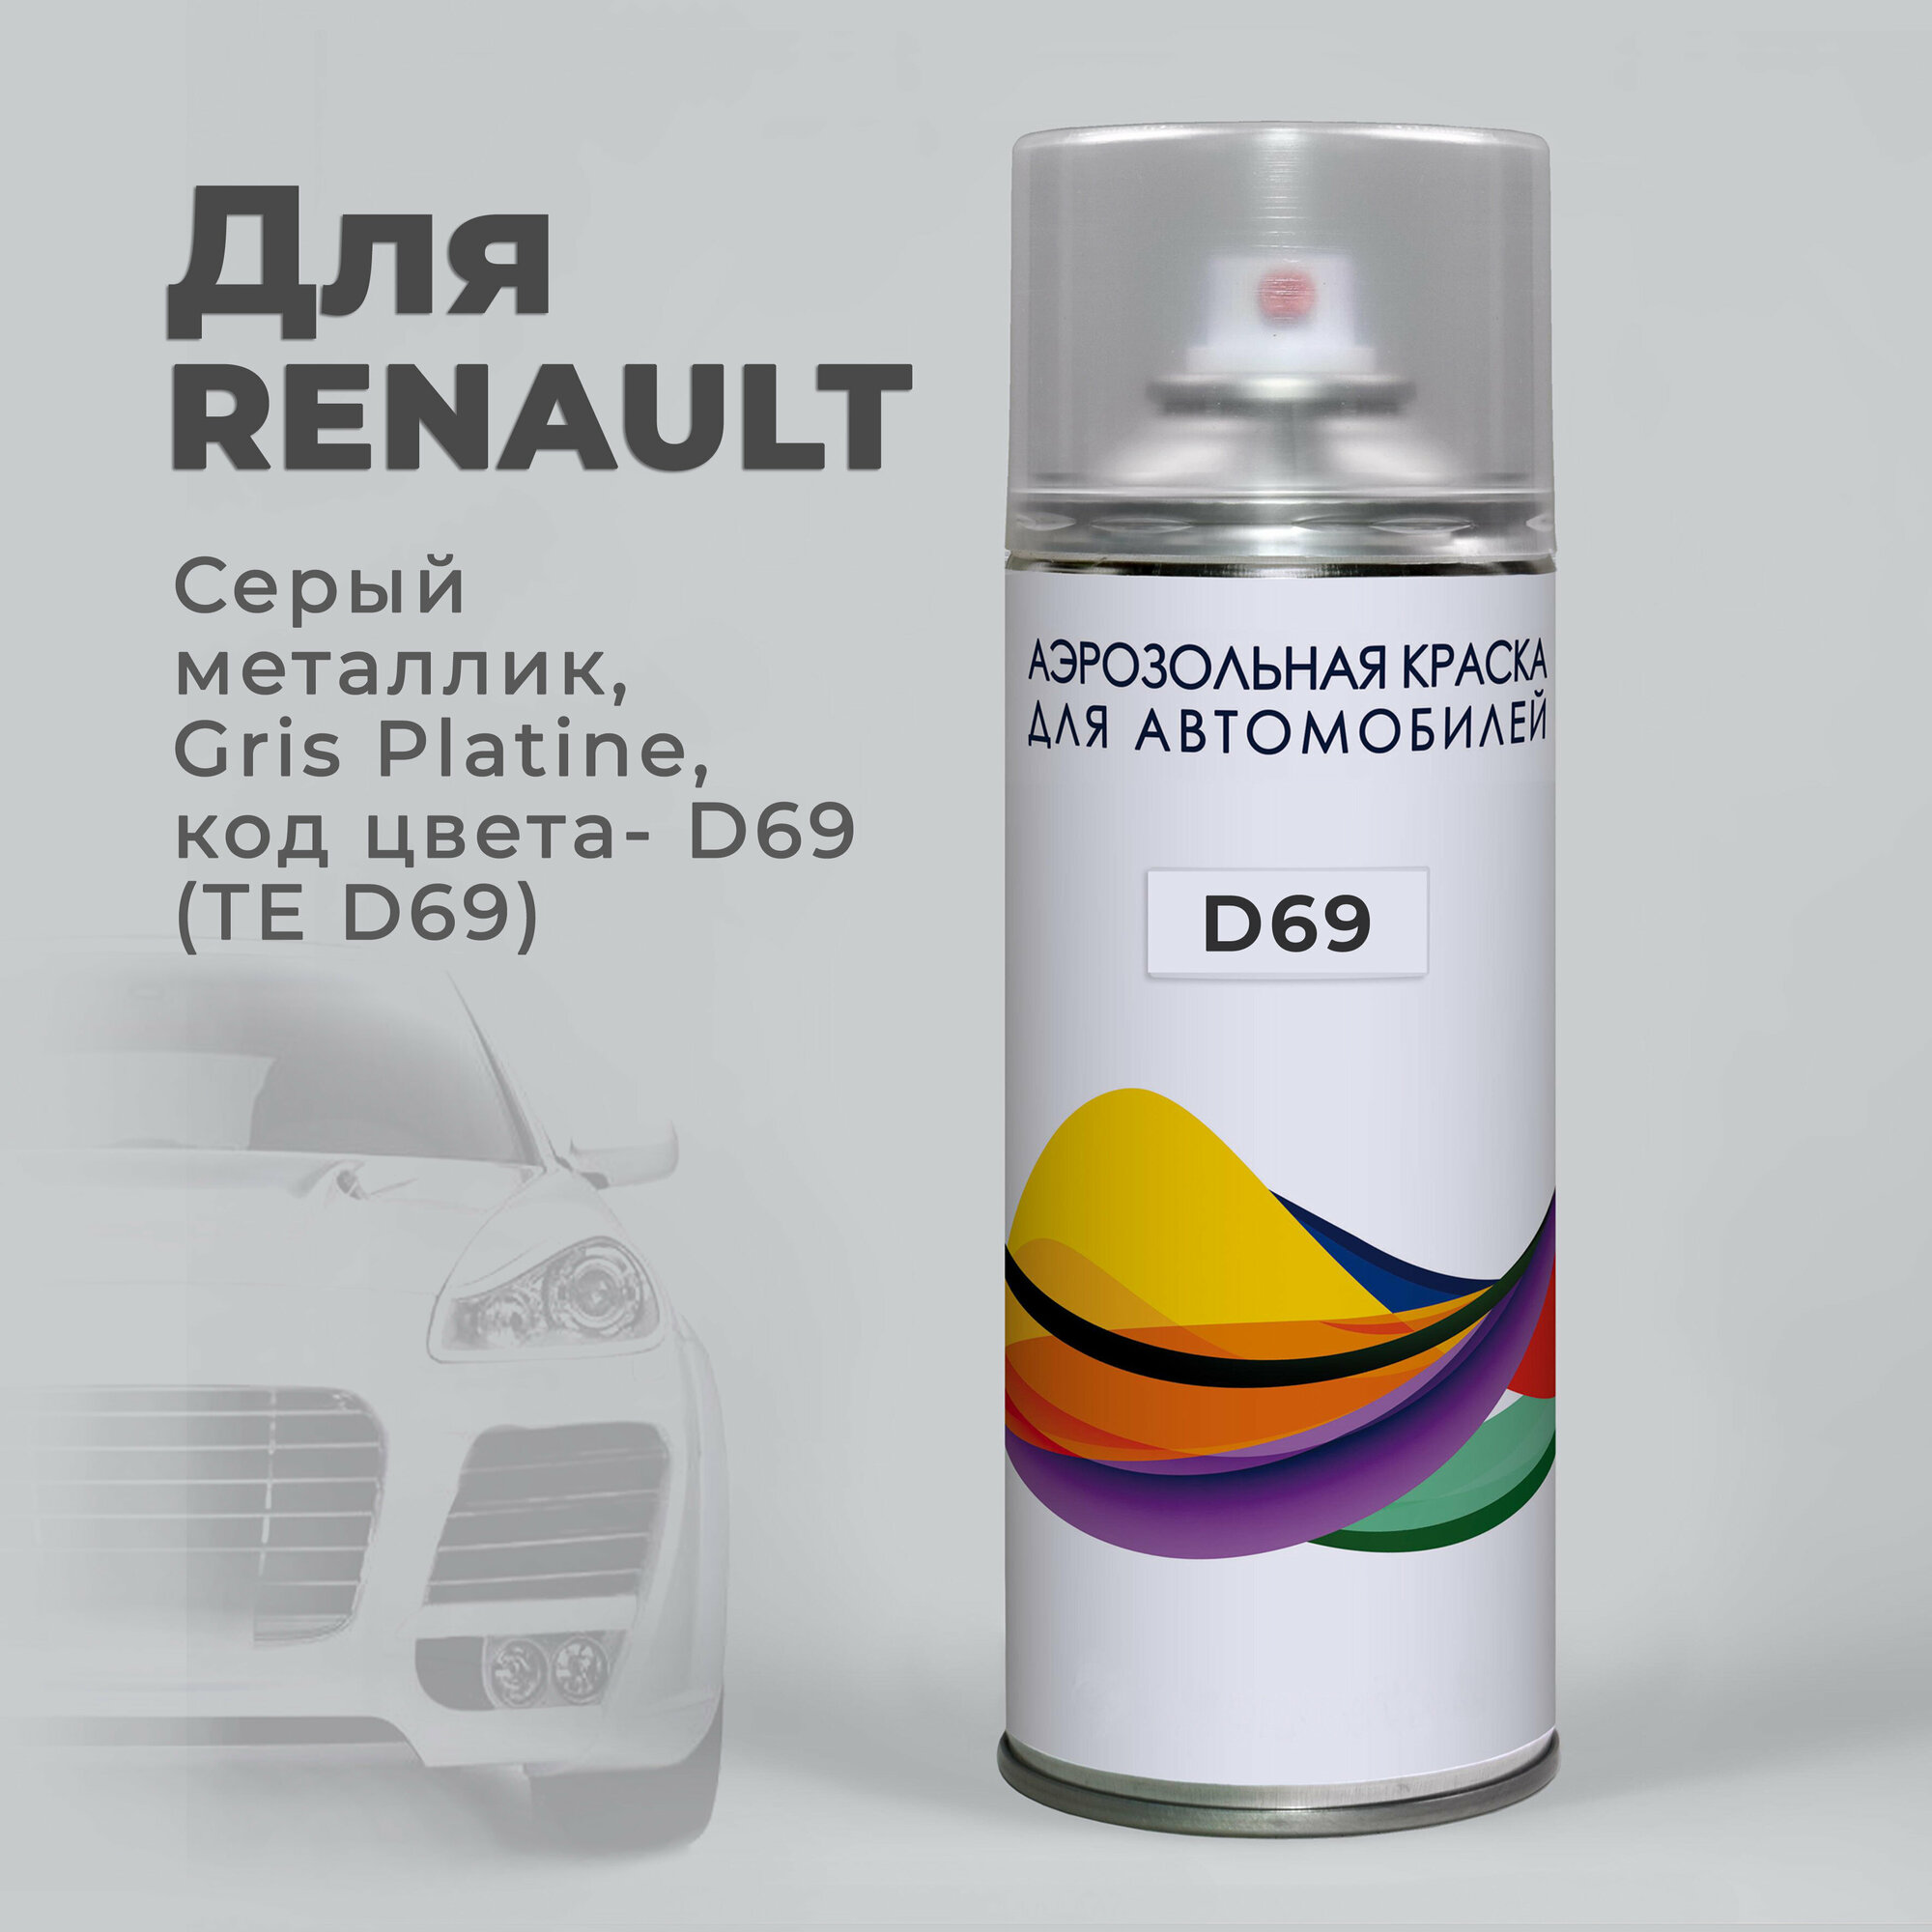 Краска-спрей, аэрозоль для авто по коду D69 (TE D69) Renault Серый металлик, Gris Platine. Аэрозольный баллон